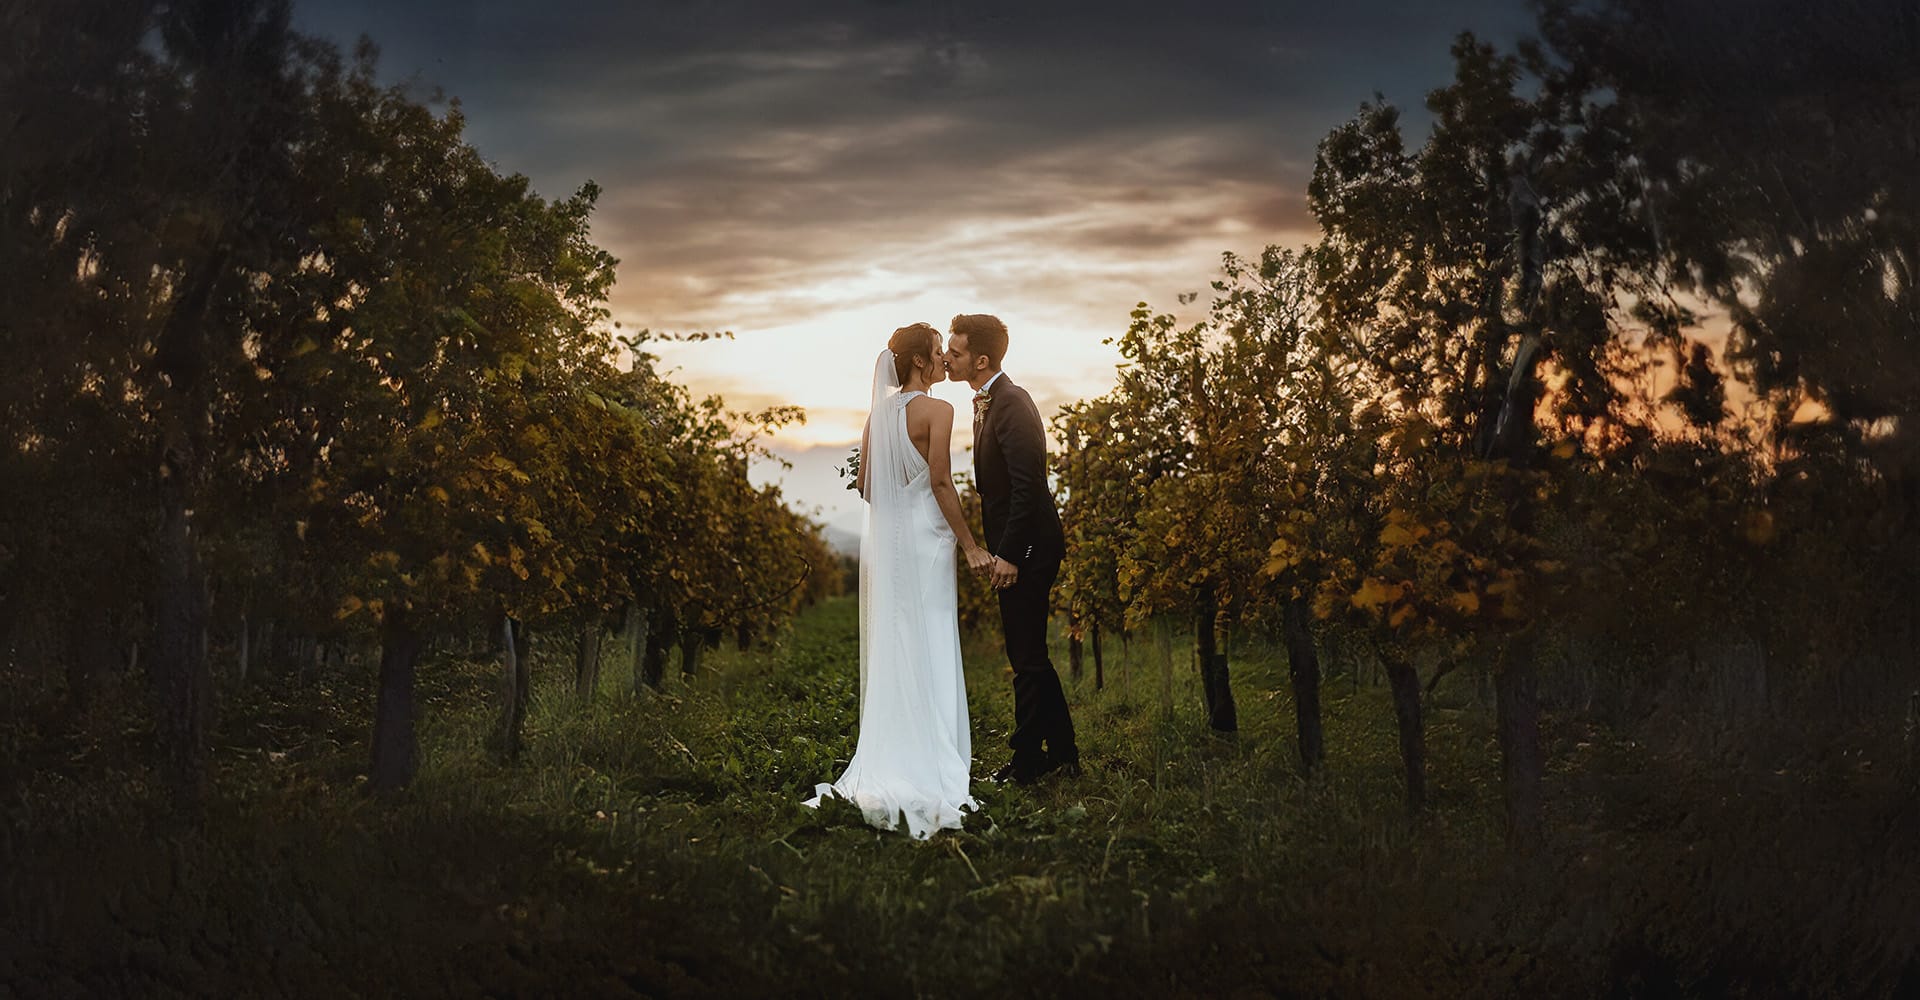 Fotografo matrimonio Torino. Matrimonio a Cascina Ranverso, ritratto di coppia degli sposi che si baciano nel vigneto al tramonto, tra l'ora dorata e l'ora blu.